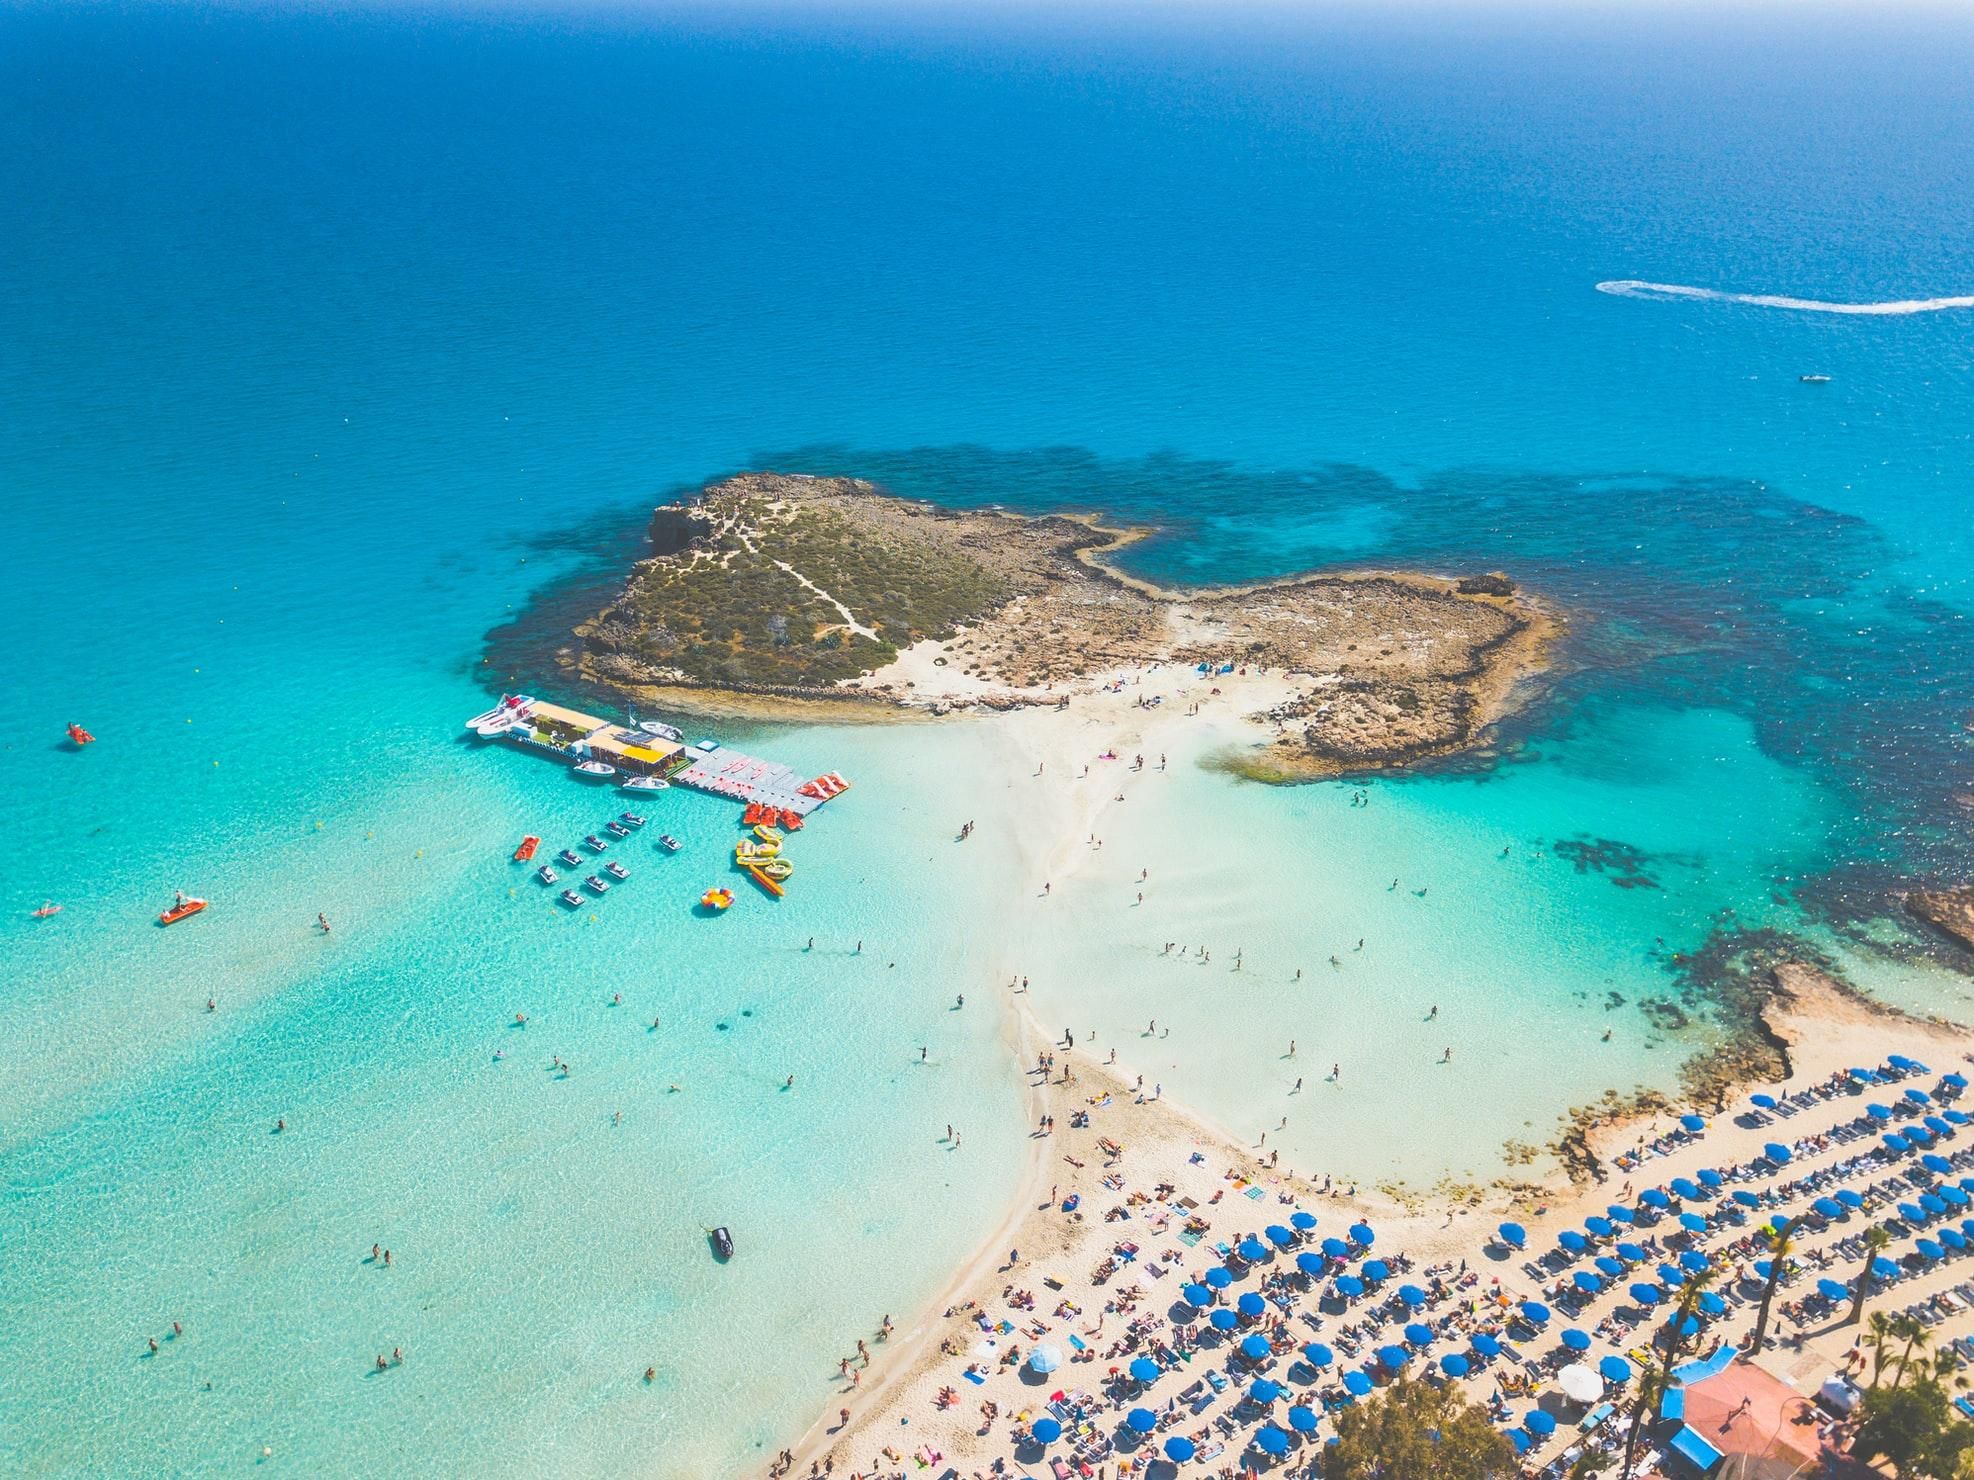 От 25 евро в обе стороны: продолжается распродажа авиабилетов в Кипр - Travel